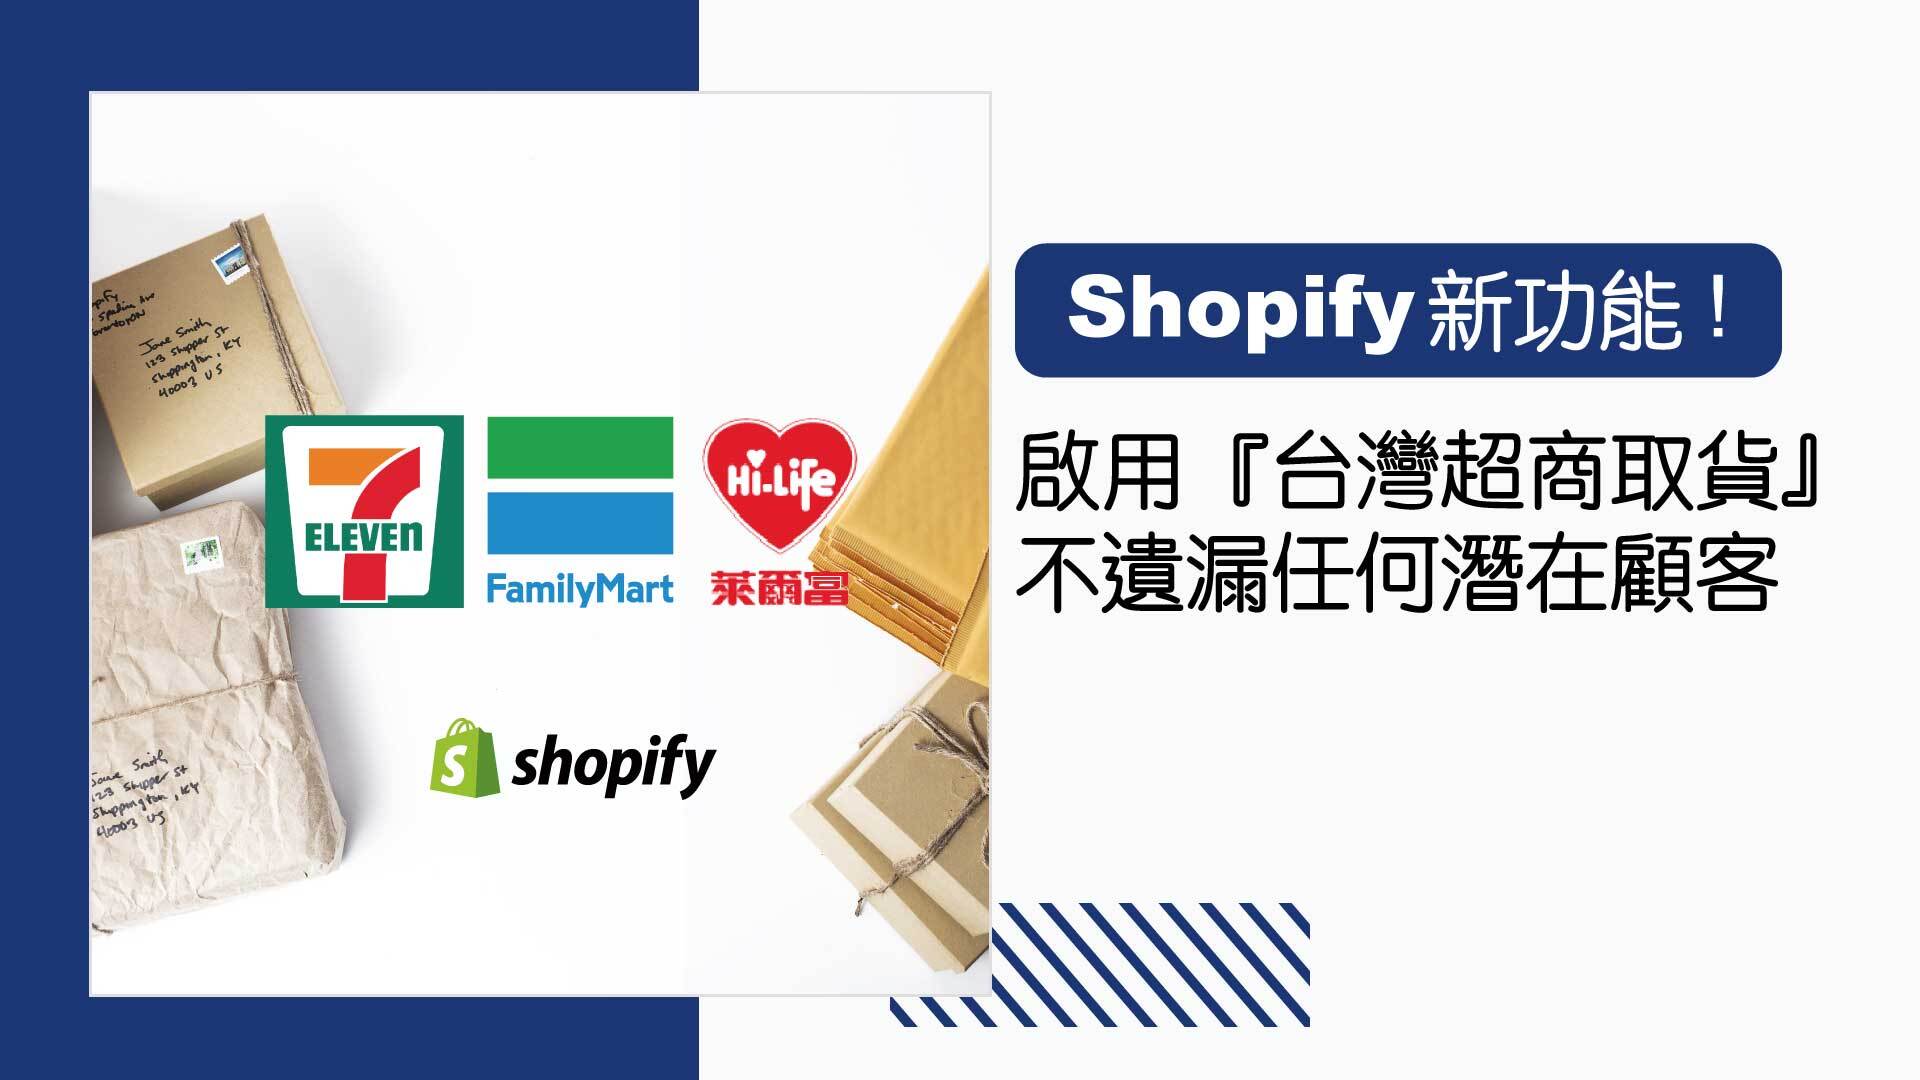 啟用最新「Shopify 台灣超商取貨」，不遺漏任何潛在顧客